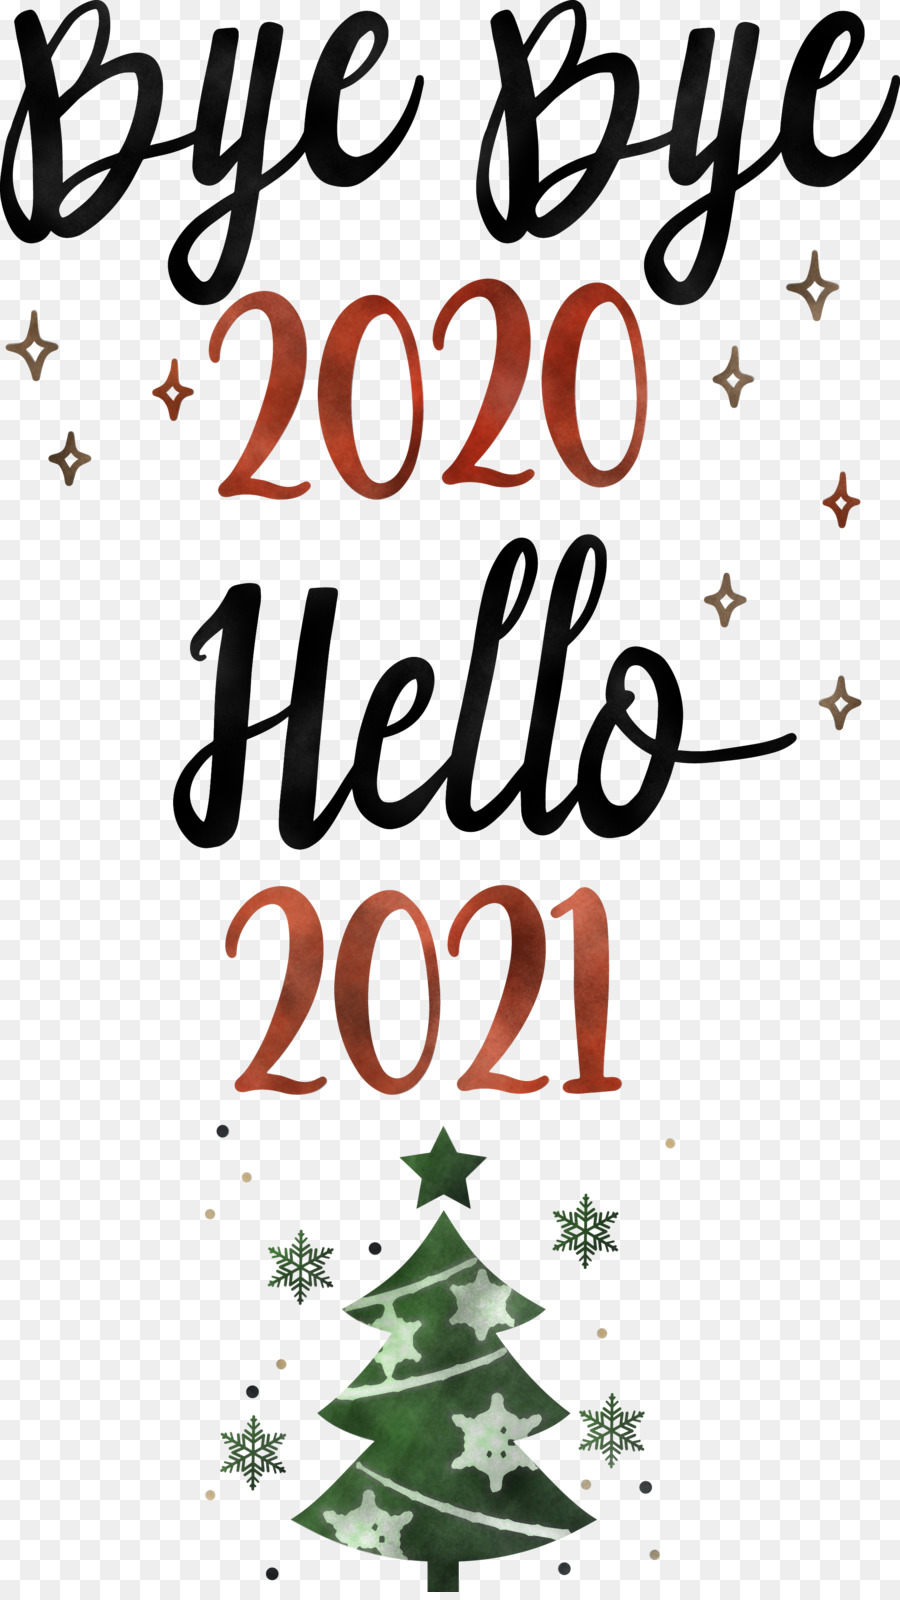 Bye Bye 2020 Hello 2021 / 11 choses qu'on aimerait voir au 